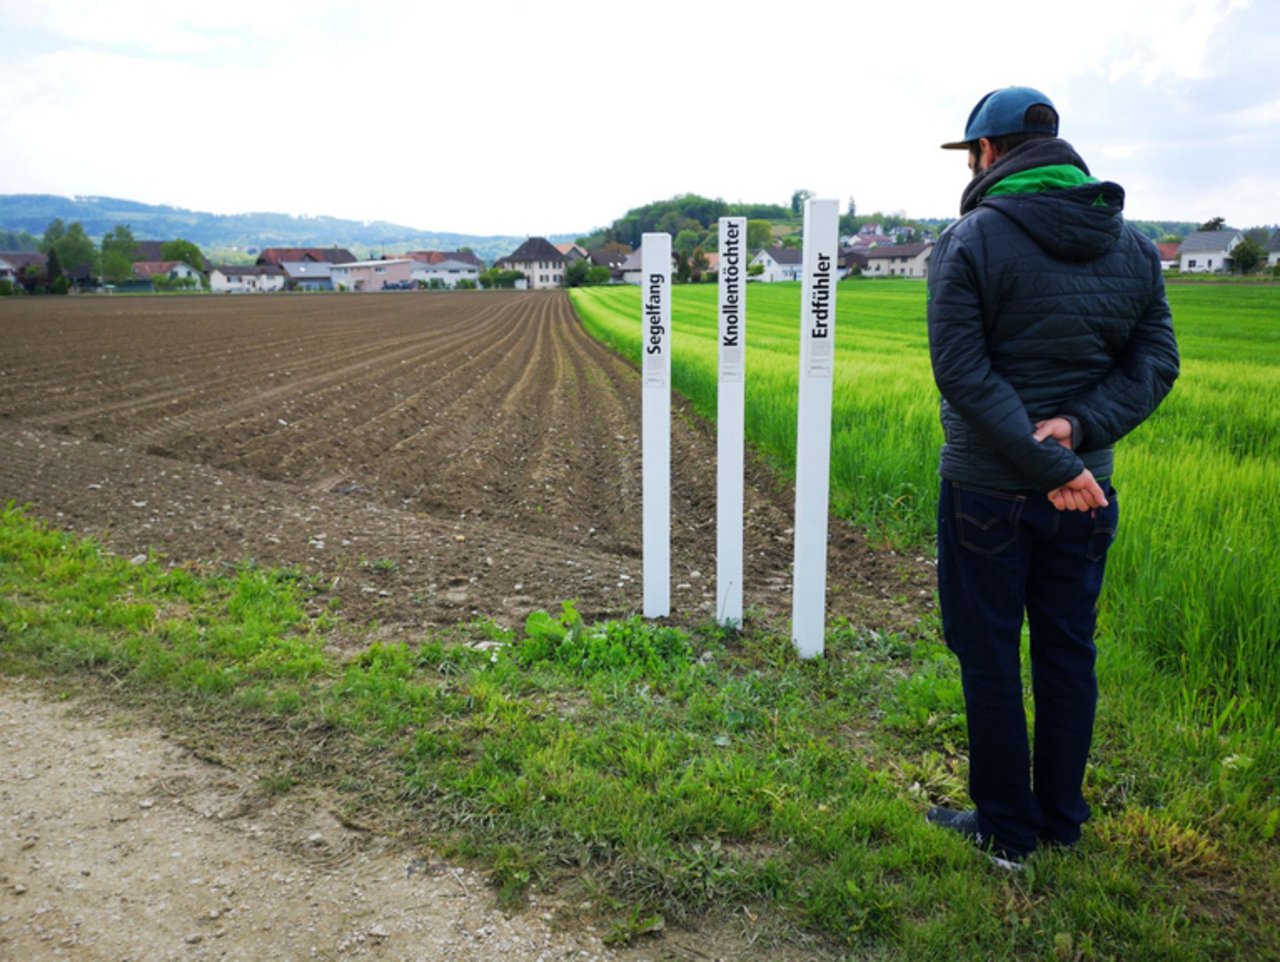 Lockpfosten tragen dazu bei, die Landwirtschaft nahbarer zu machen und Produktionszweige, aber auch die ökologischen Leistungen der Schweizer Landwirtschaft, in den Fokus zu rücken. (Bild lid)